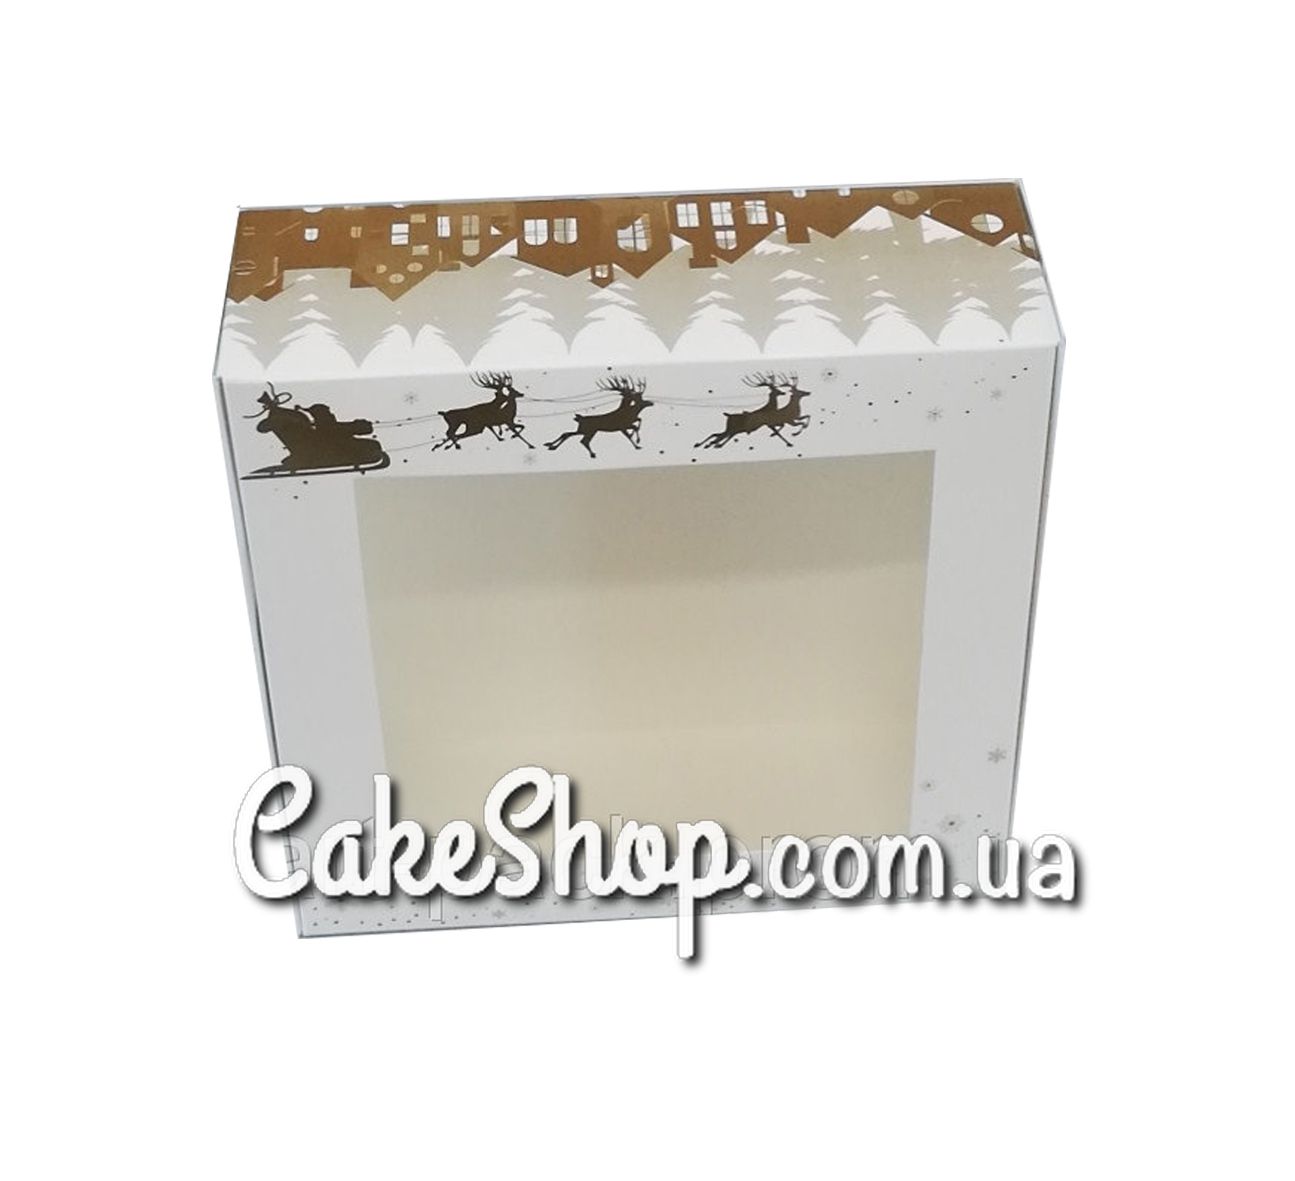 ⋗ Коробка для зефира с окном принт ЗОЛОТО, 20х20х7 см купить в Украине ➛ CakeShop.com.ua, фото